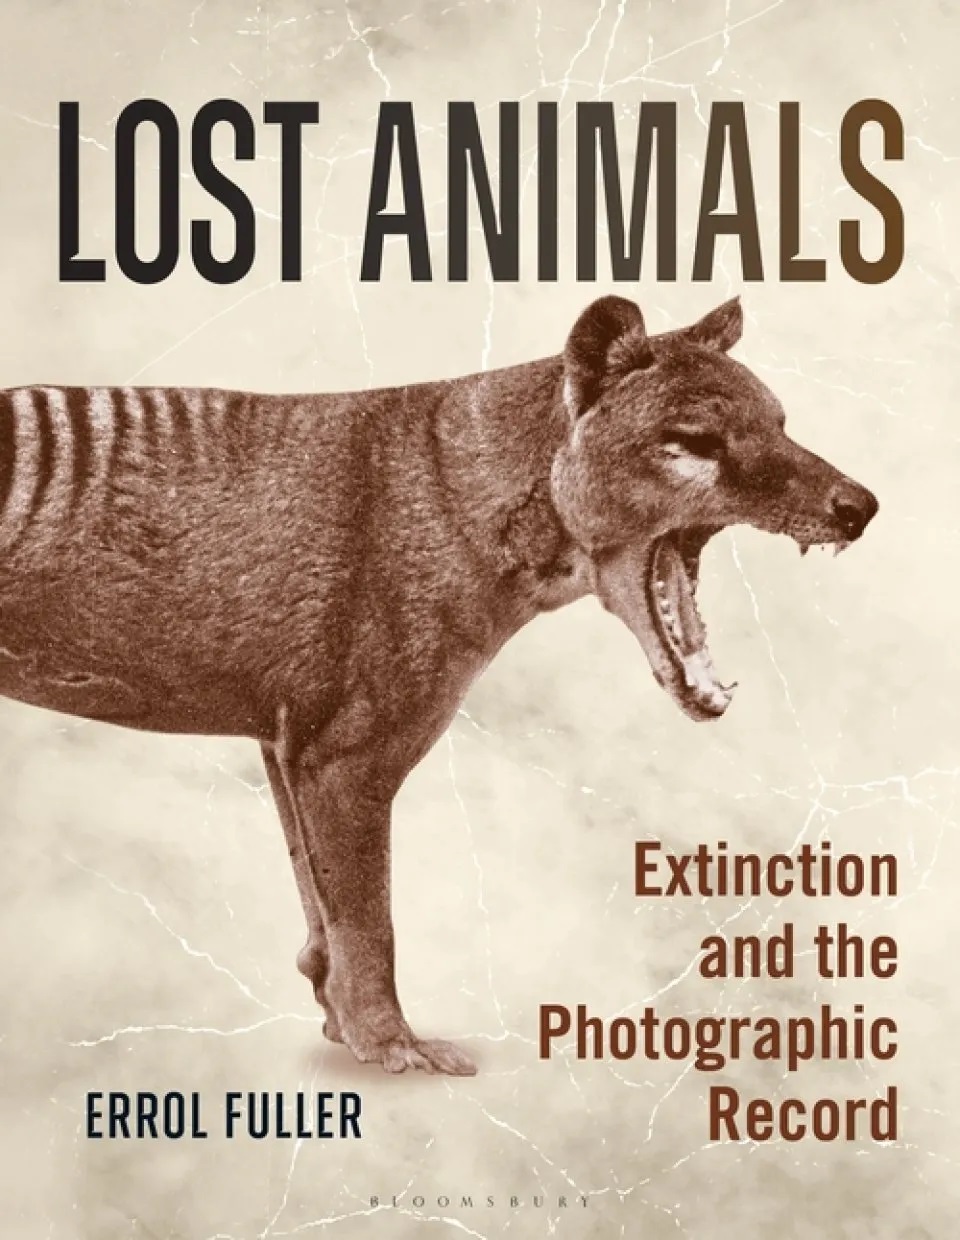 Анимал лост. Объявление Lost animals. Лост животные. Extinct animals перевод.